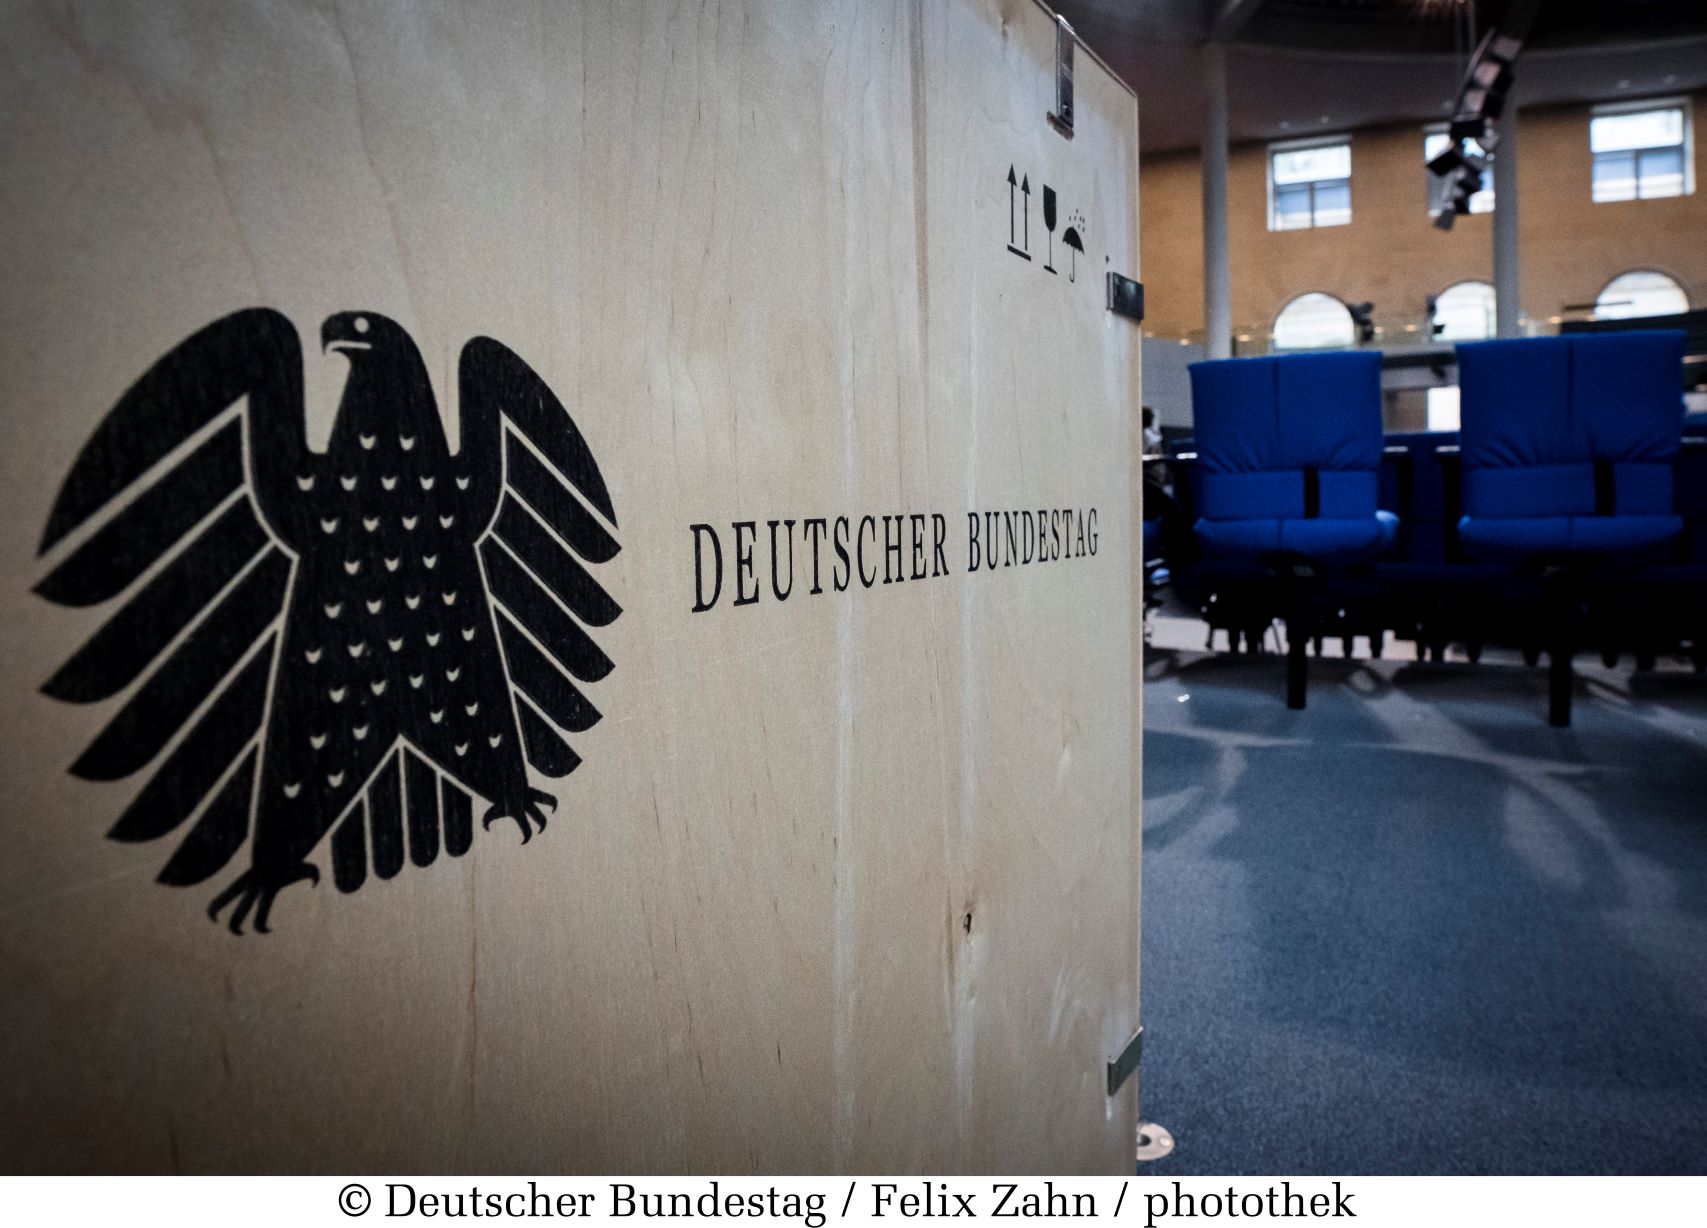 Bild: Versandkarton mit Logo des Bundestages